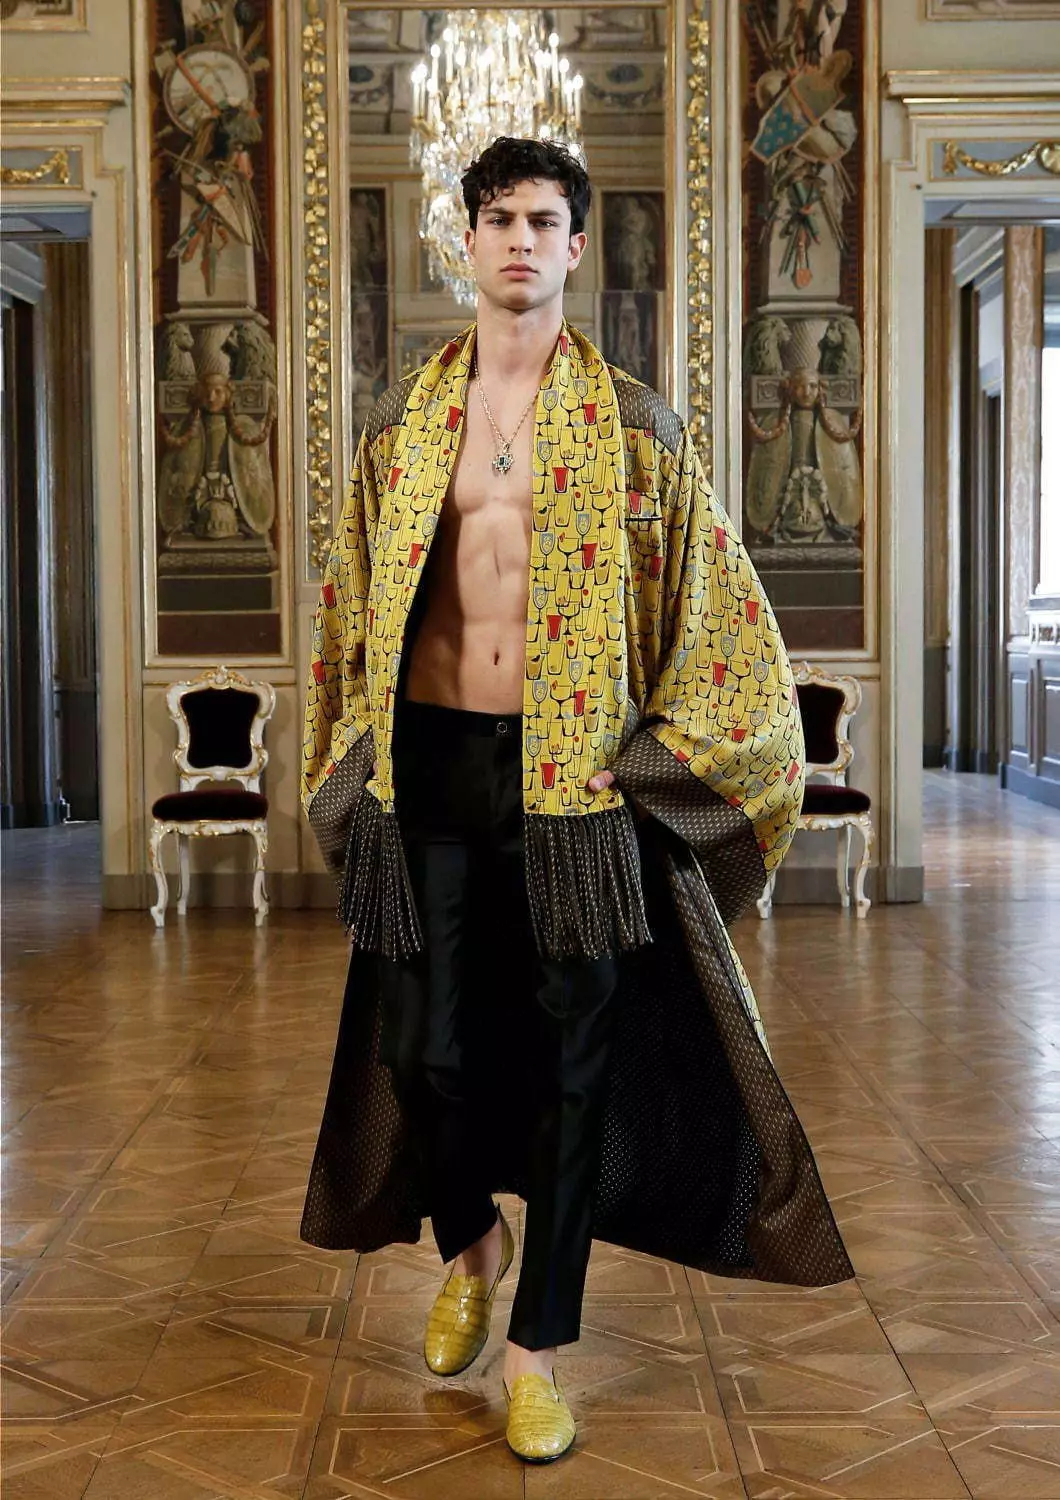 Colección Dolce & Gabbana Alta Sartoria Menswear Xullo 2020 53602_12